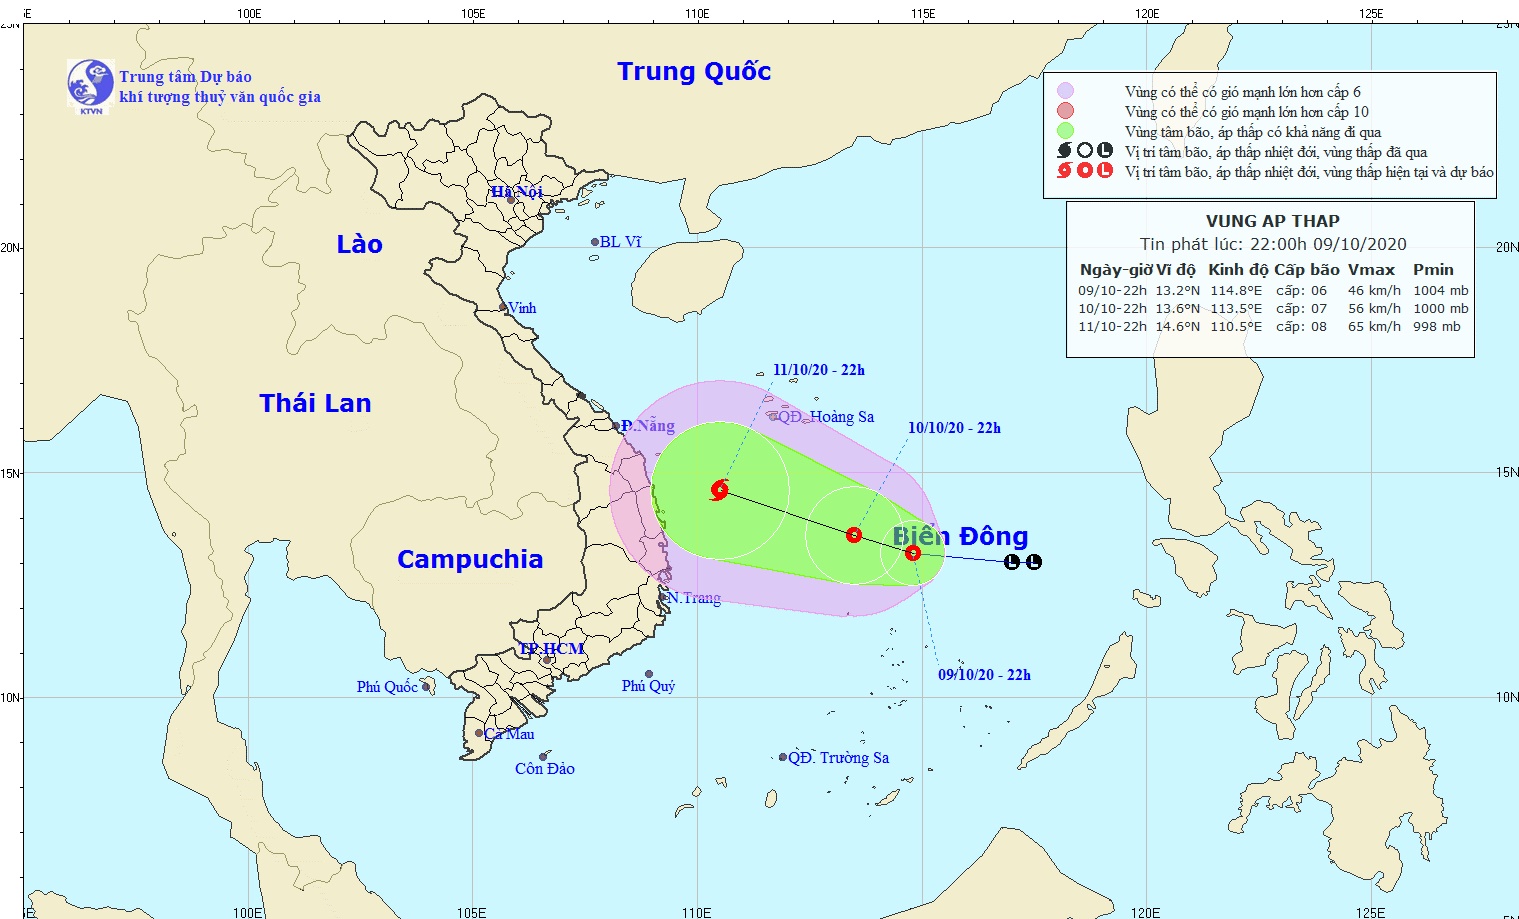 Hồi 22 giờ ngày 9/10, vị trí tâm áp thấp nhiệt đới cách đảo Song Tử Tây khoảng 200 km về phía Bắc. Ảnh: KTVN